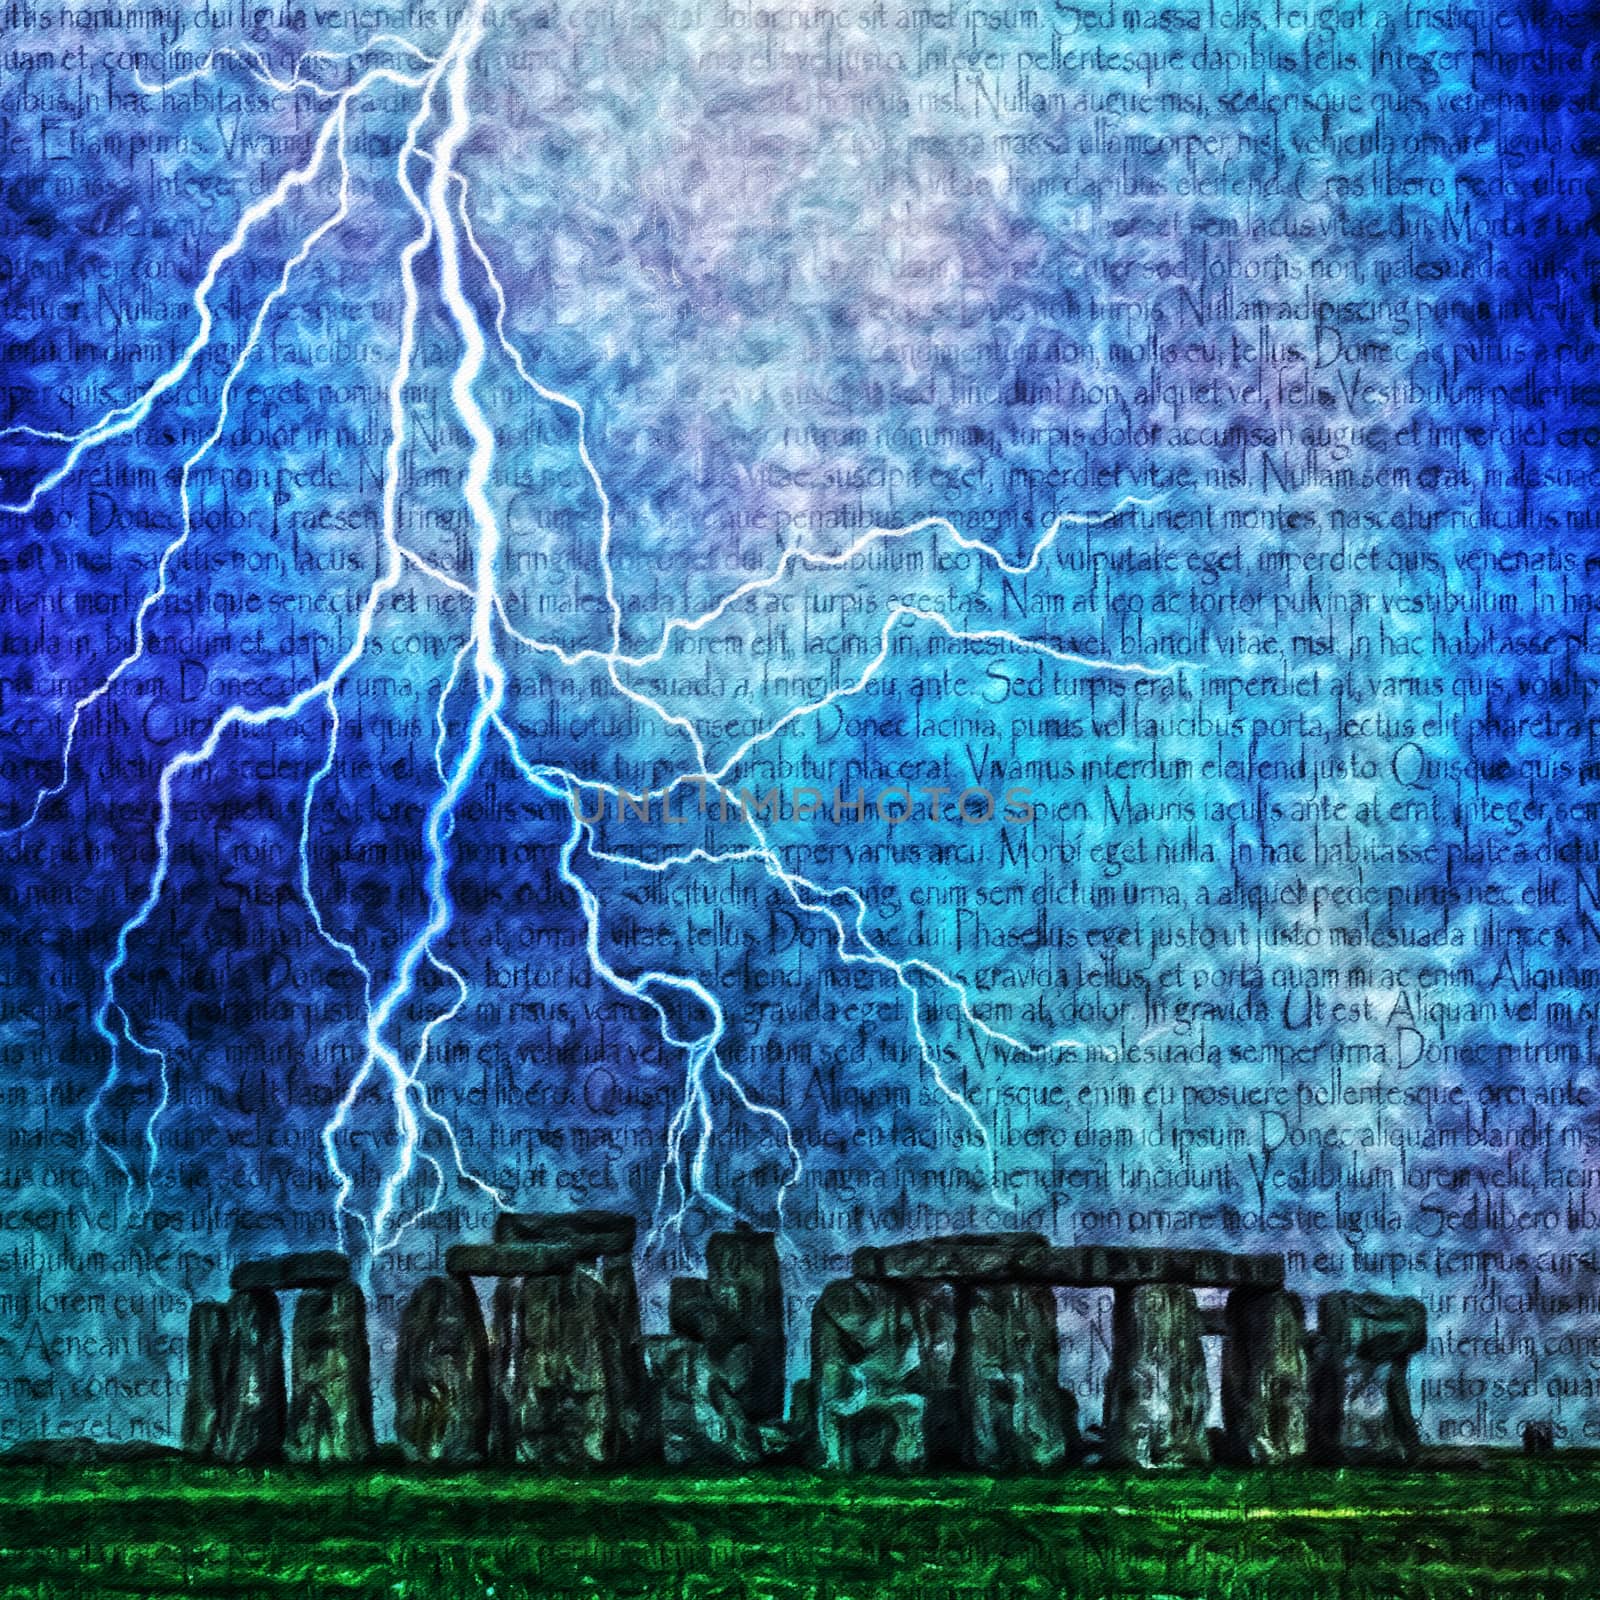 Stonehenge. Lightning and latin text